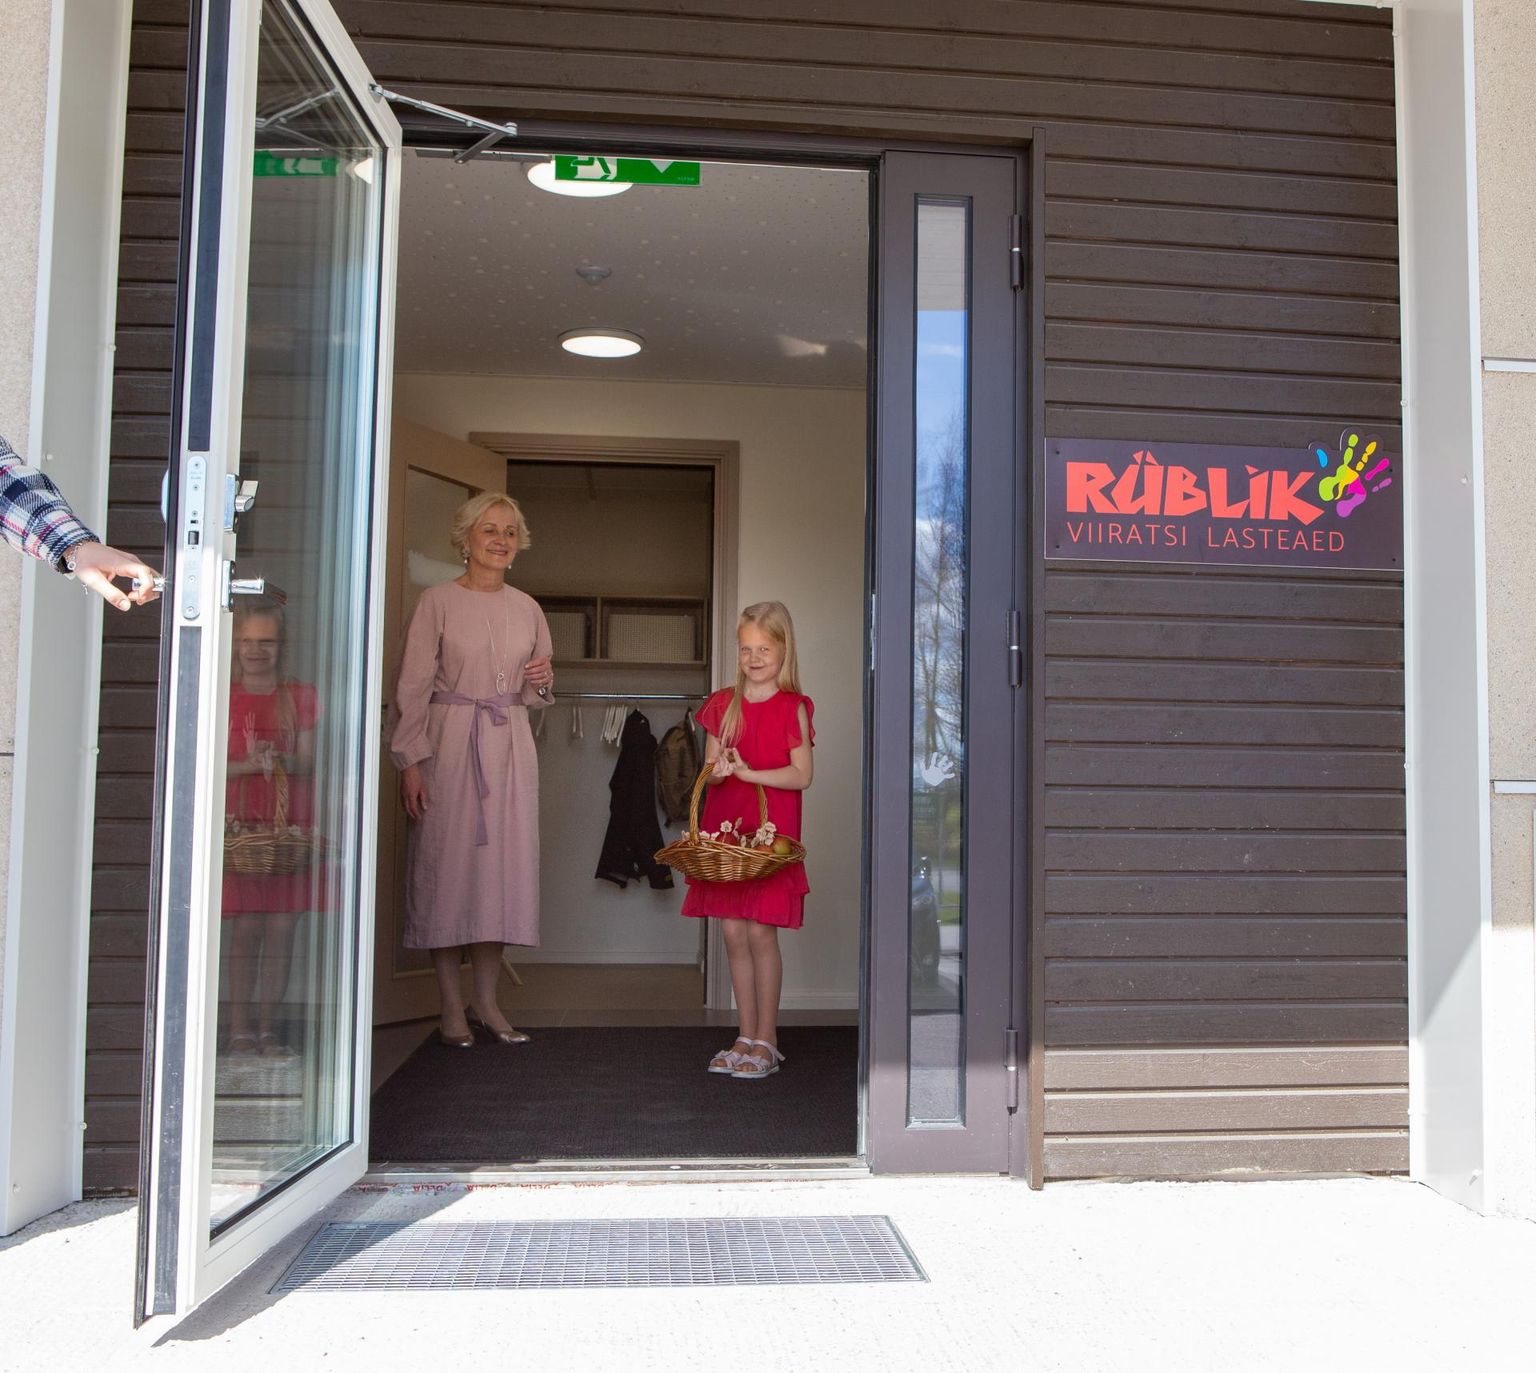 Viiratsi lasteaia Rüblik värsked ruumid on avatud. Direktor Luive Rehand koos särasilmse abilisega kostitas avamispeol külalisi tervisliku ampsuga.